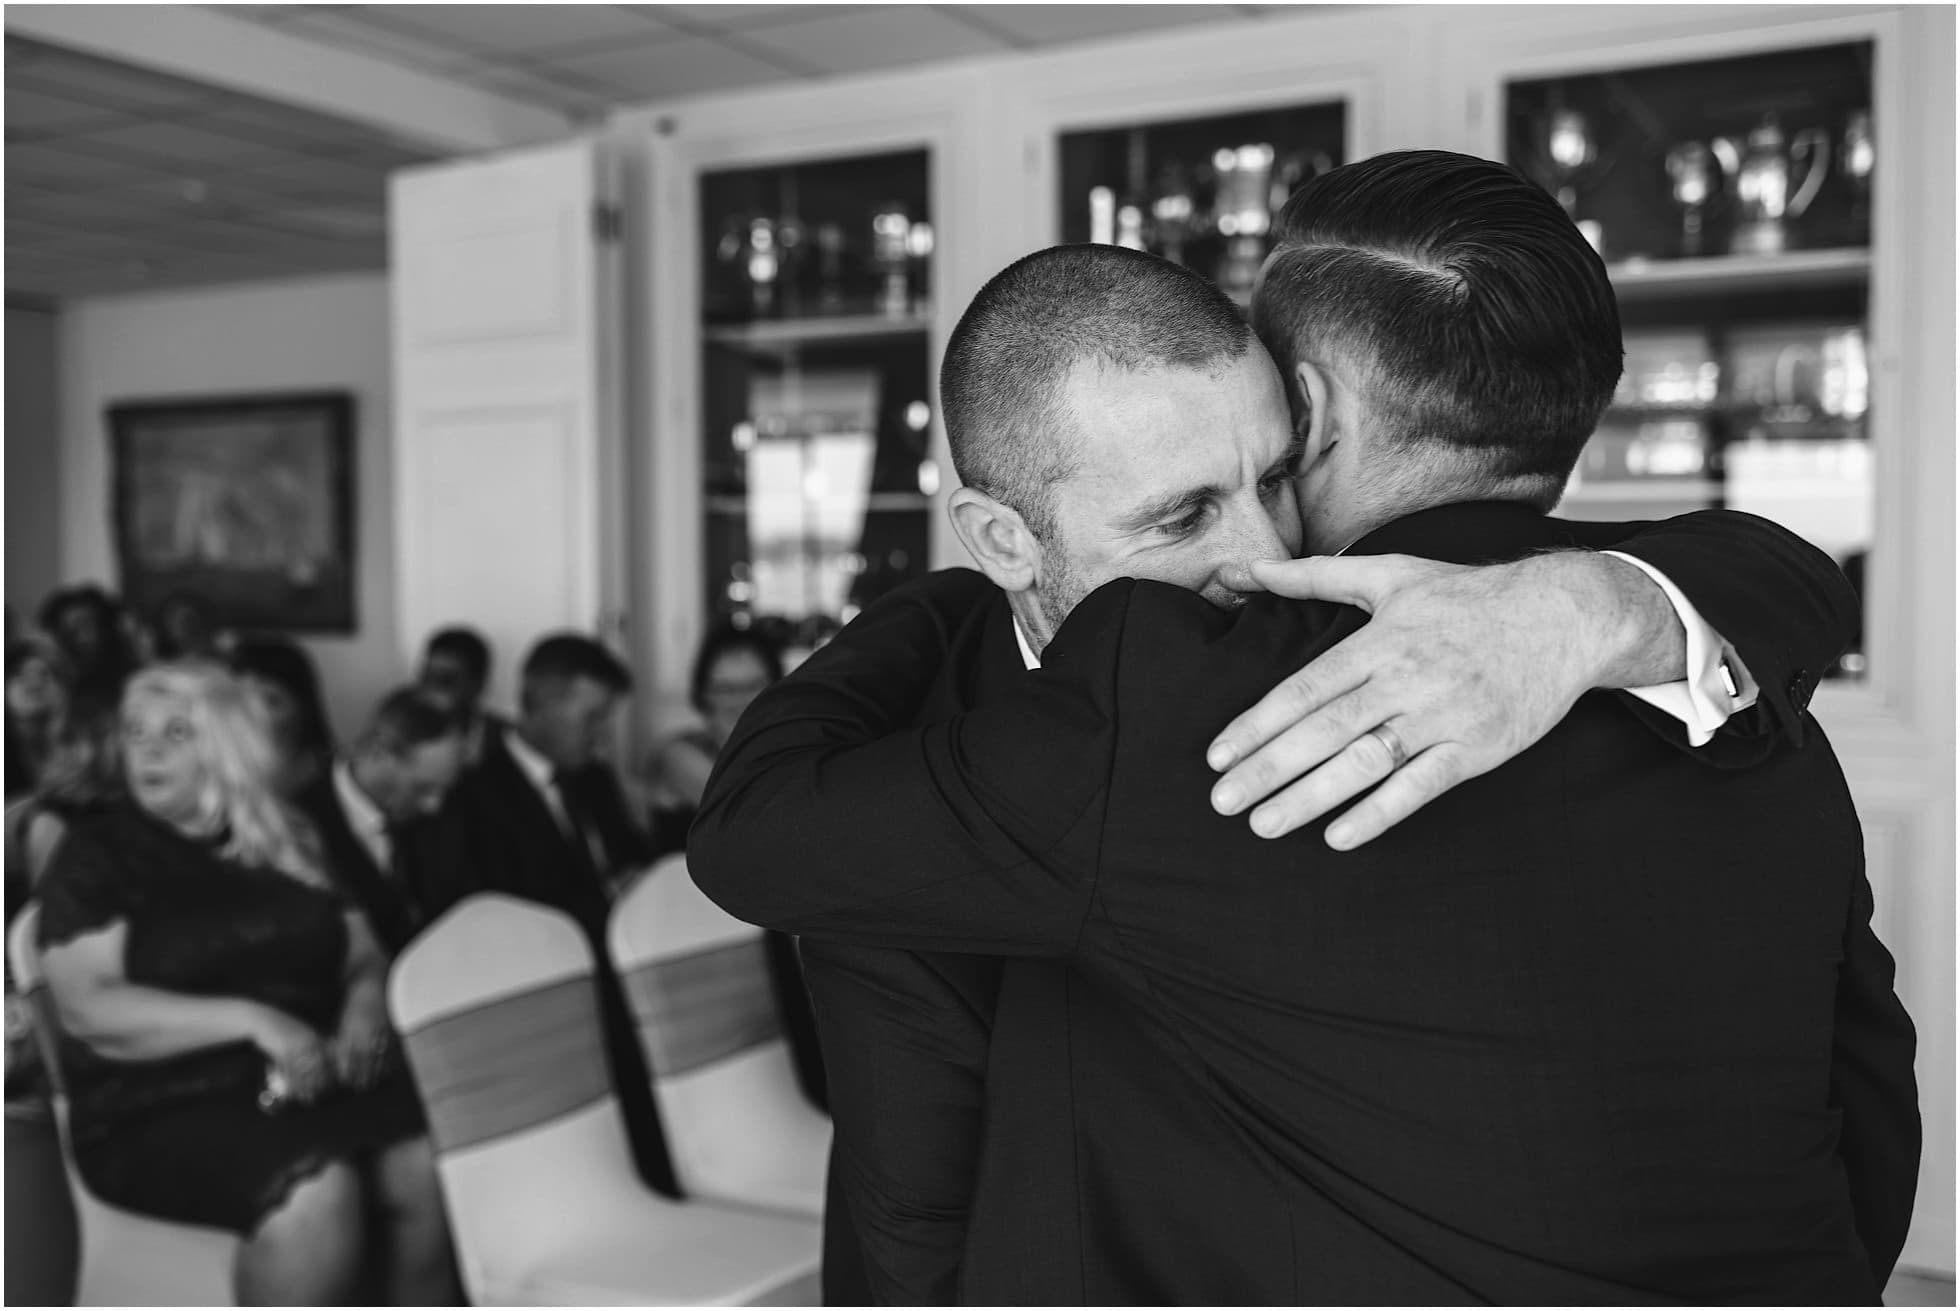 Hugging the groom